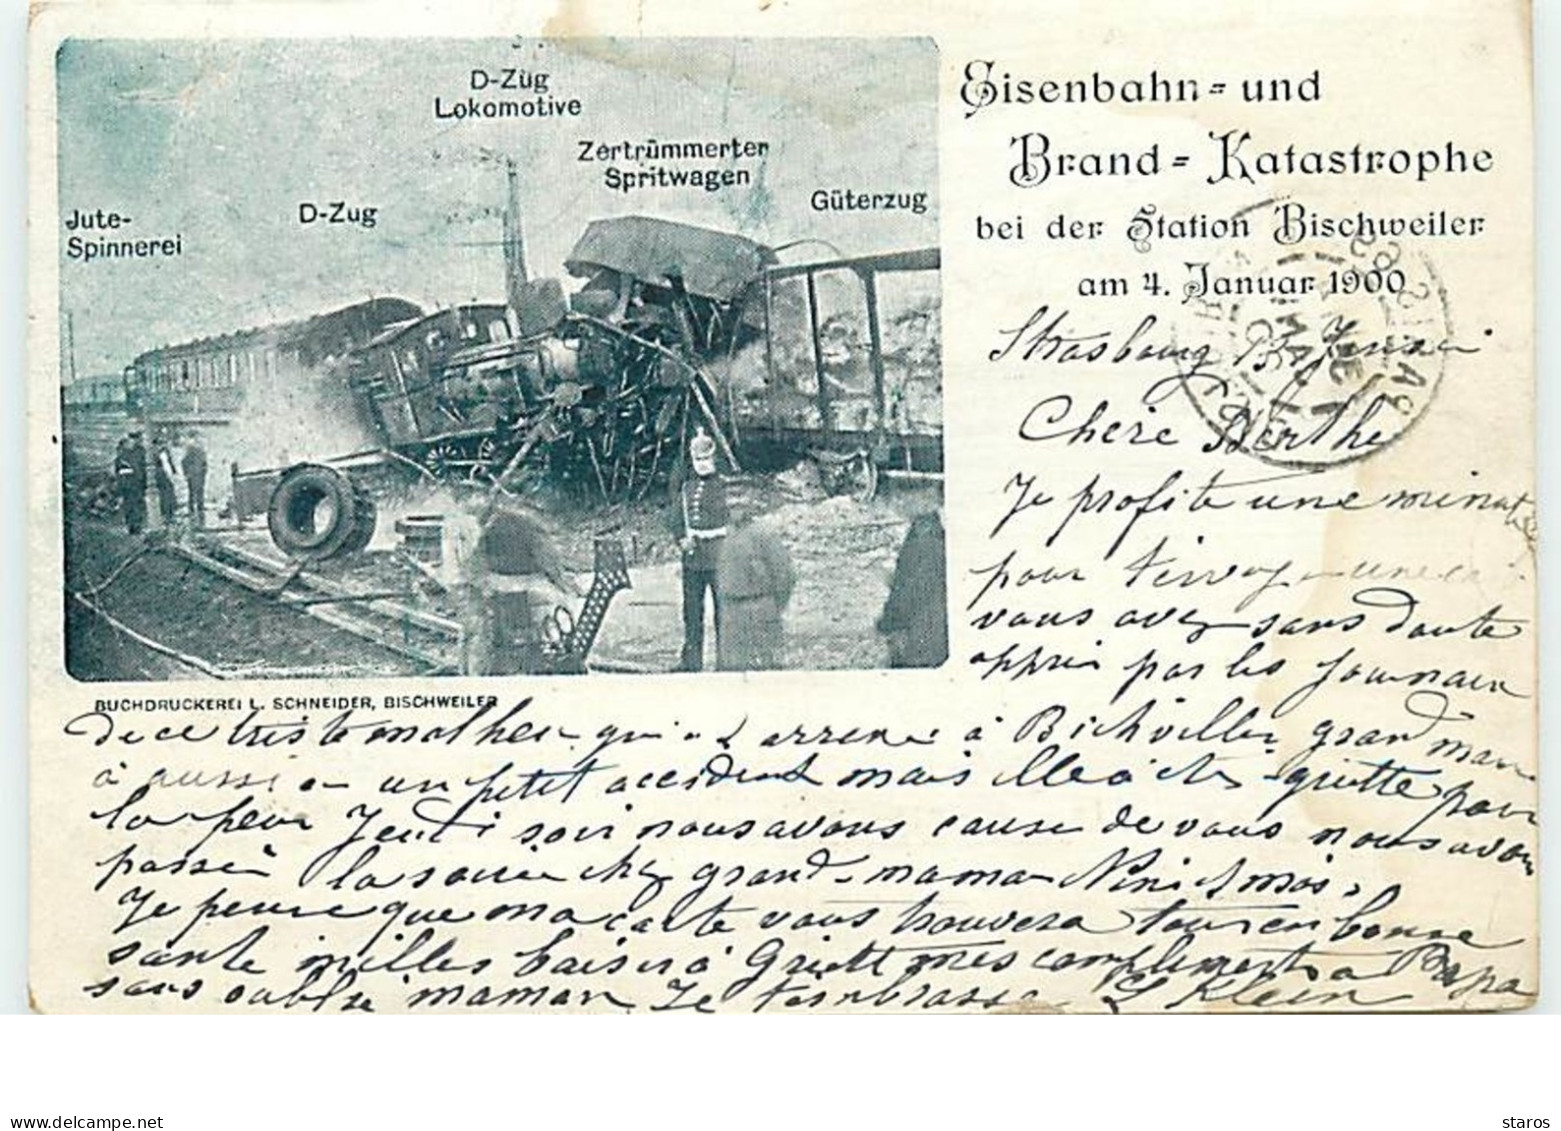 Eisenbahn Und Brand Katastrophe Bei Der Station Bischweiler Am 4 Januar 1900 - Catastrophe Ferroviaire - Bischwiller